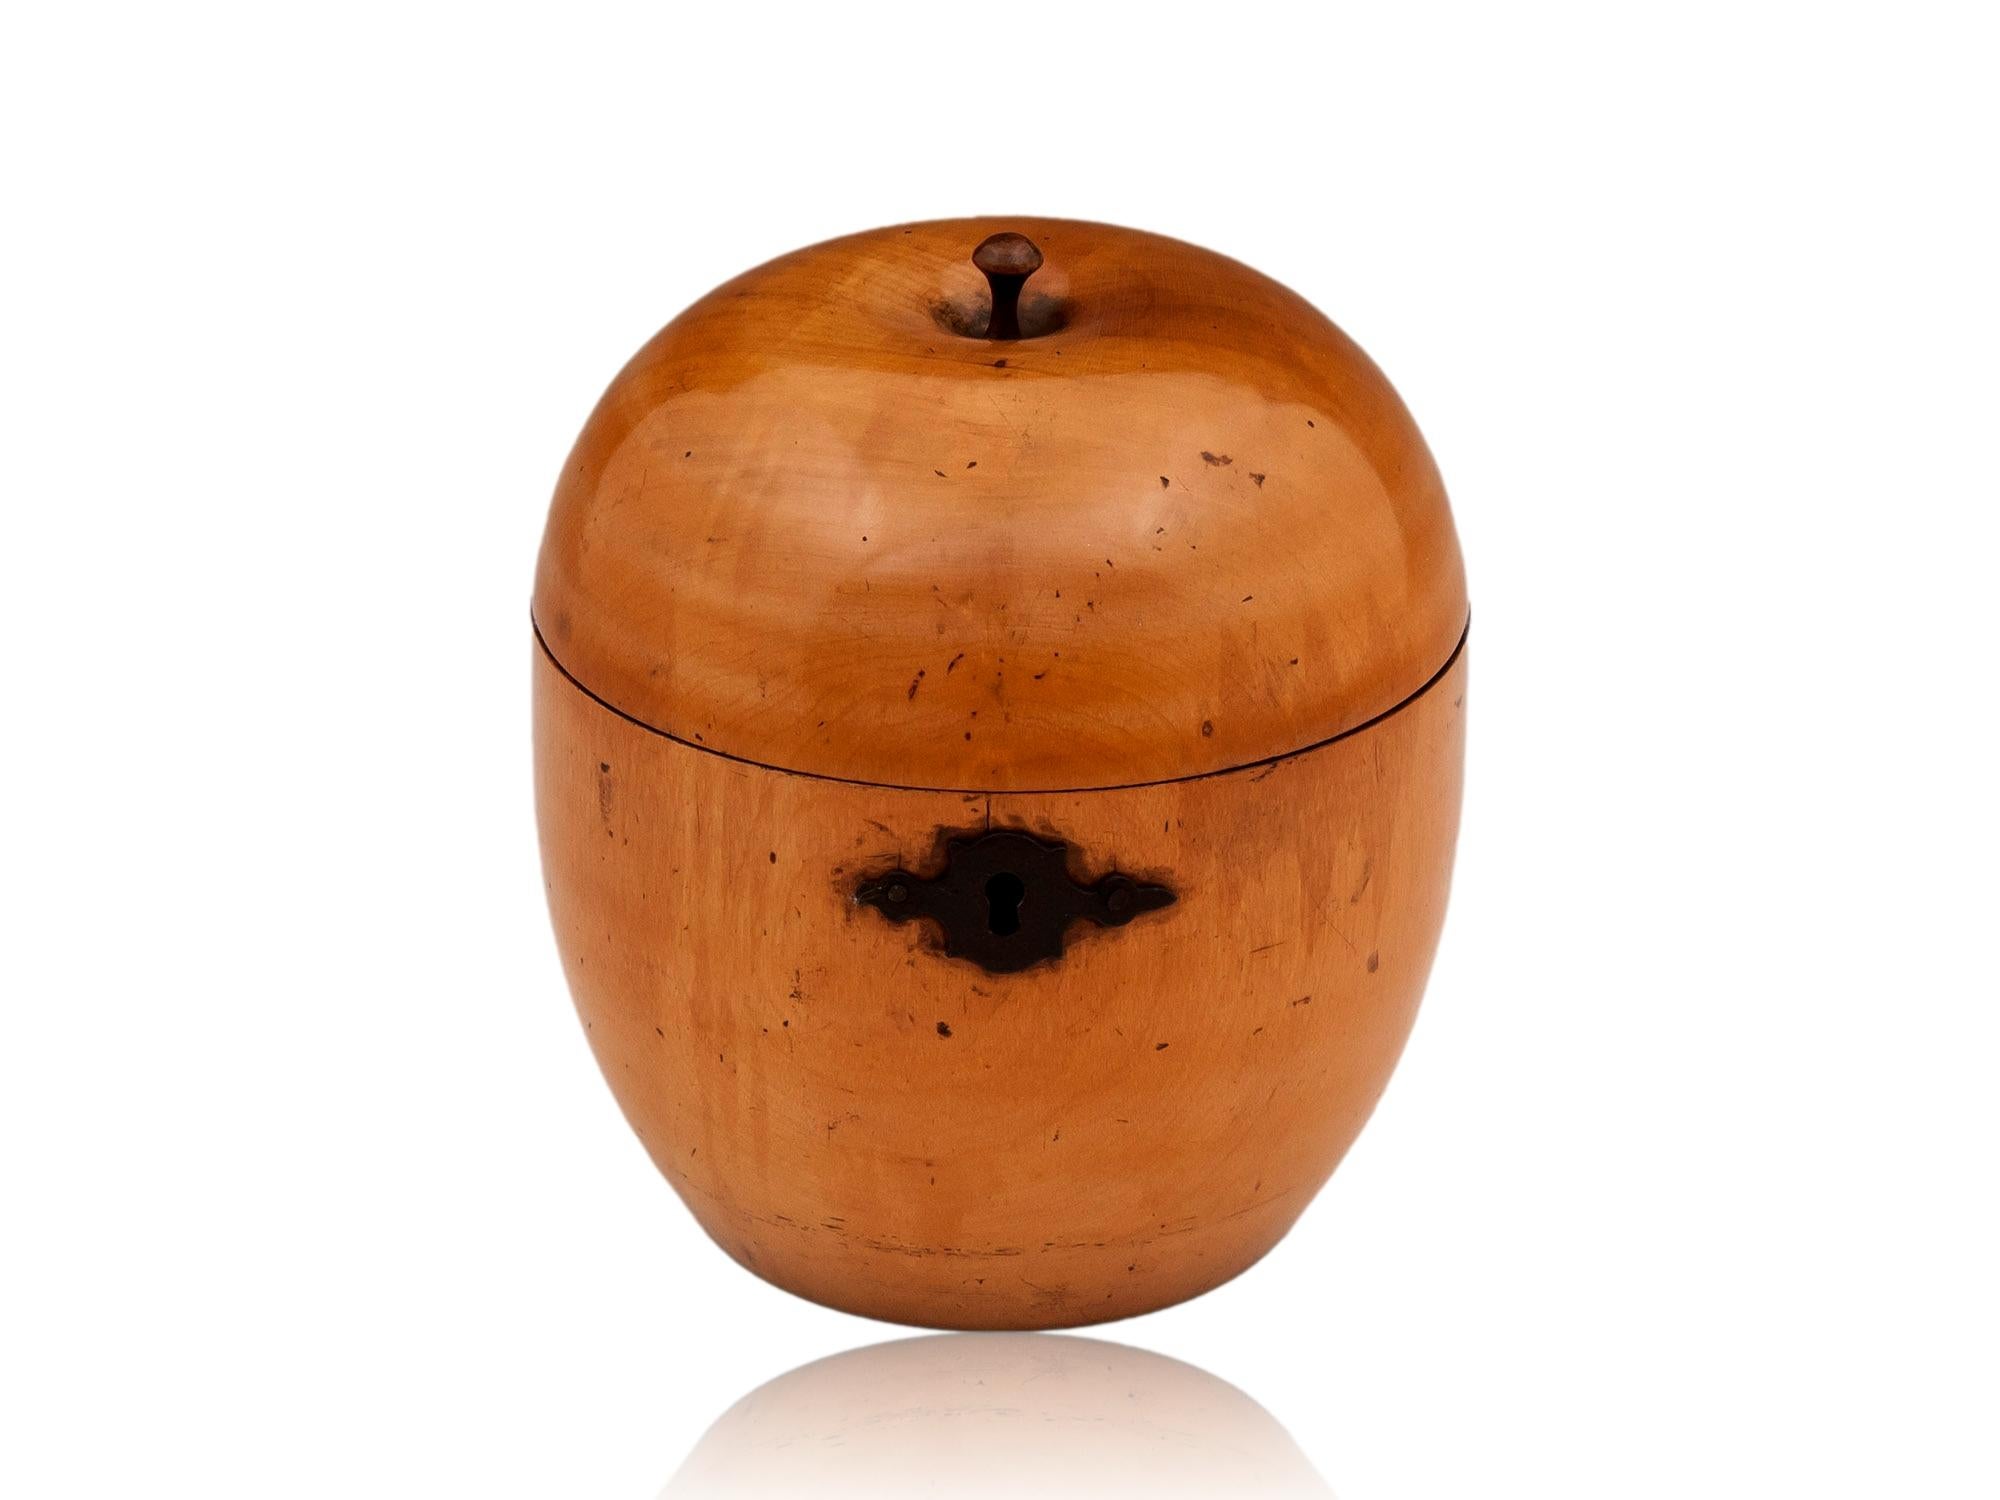 En forme de pomme

Dans notre collection de boîtes à thé, nous avons le plaisir de vous proposer cette superbe boîte à thé géorgienne en bois de pommier. La boîte à thé sculptée en Steele est une nouveauté. Elle est dotée d'un pied en forme de